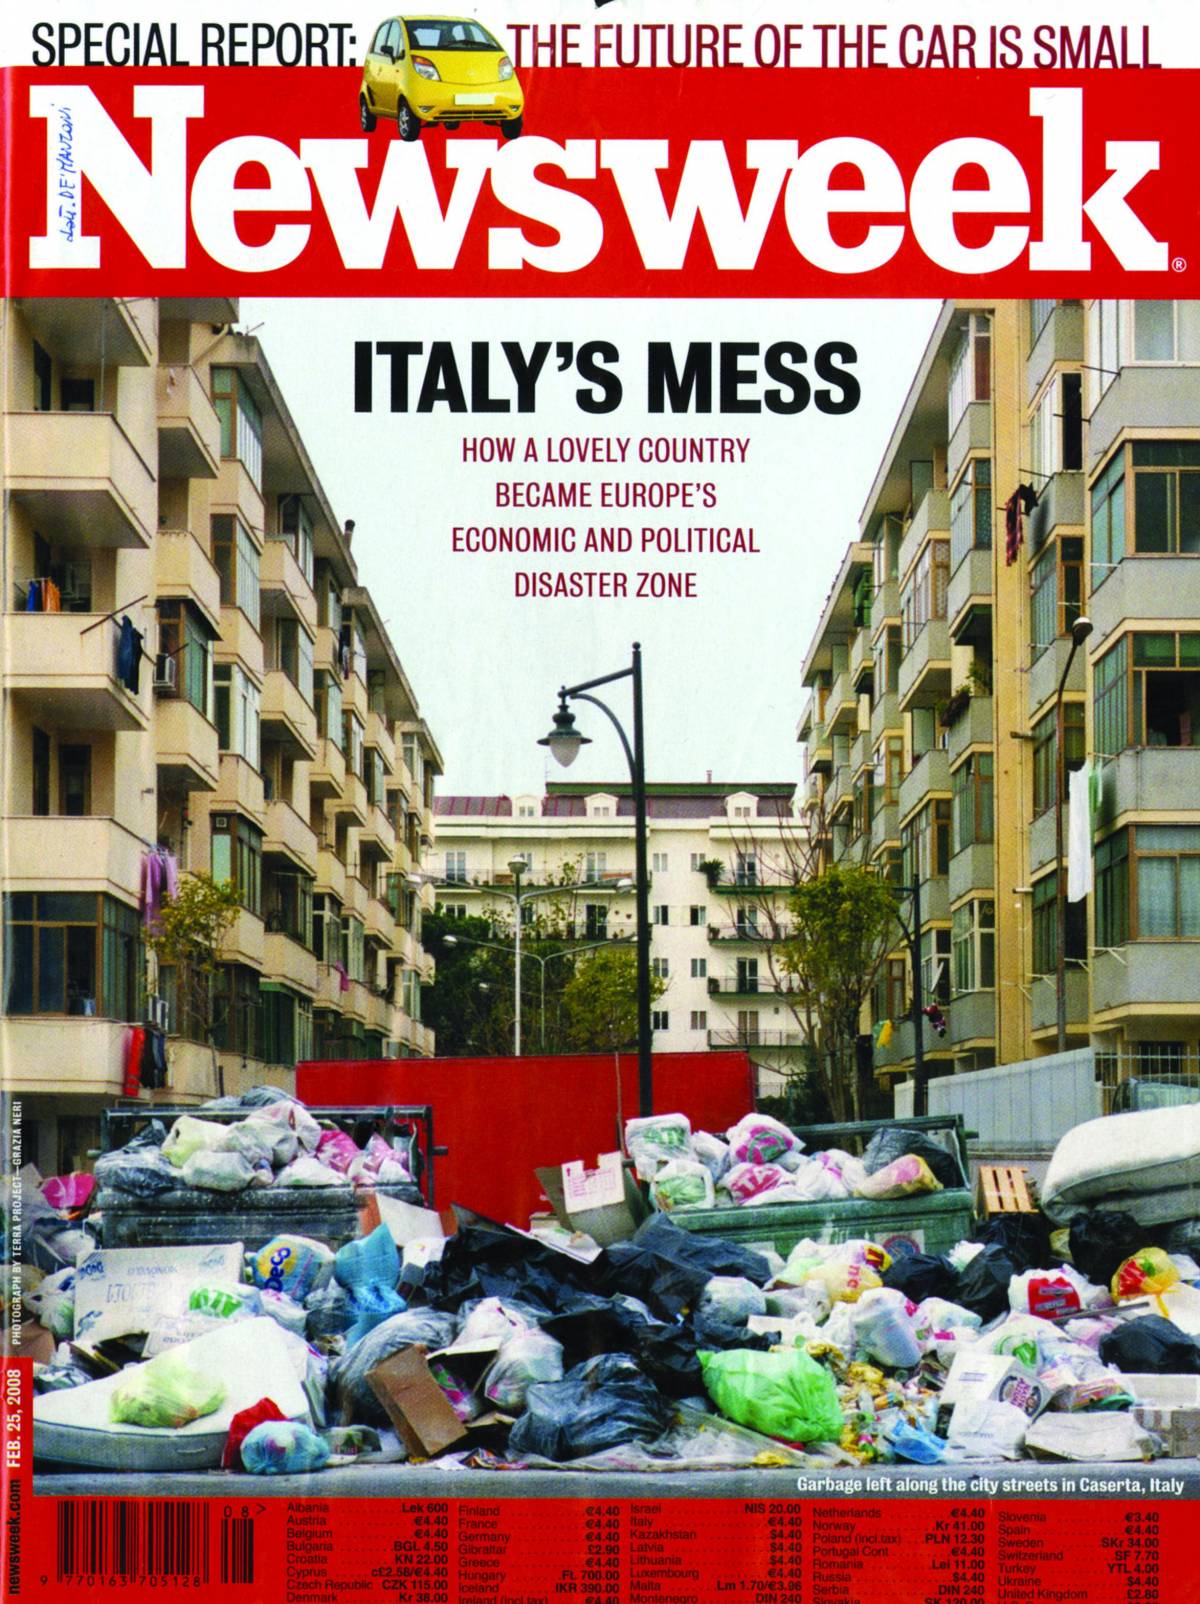 La benzina schizza a 1,4 euro al litro Il governo: tutto ok  «Newsweek»: l’Italia è nel caos